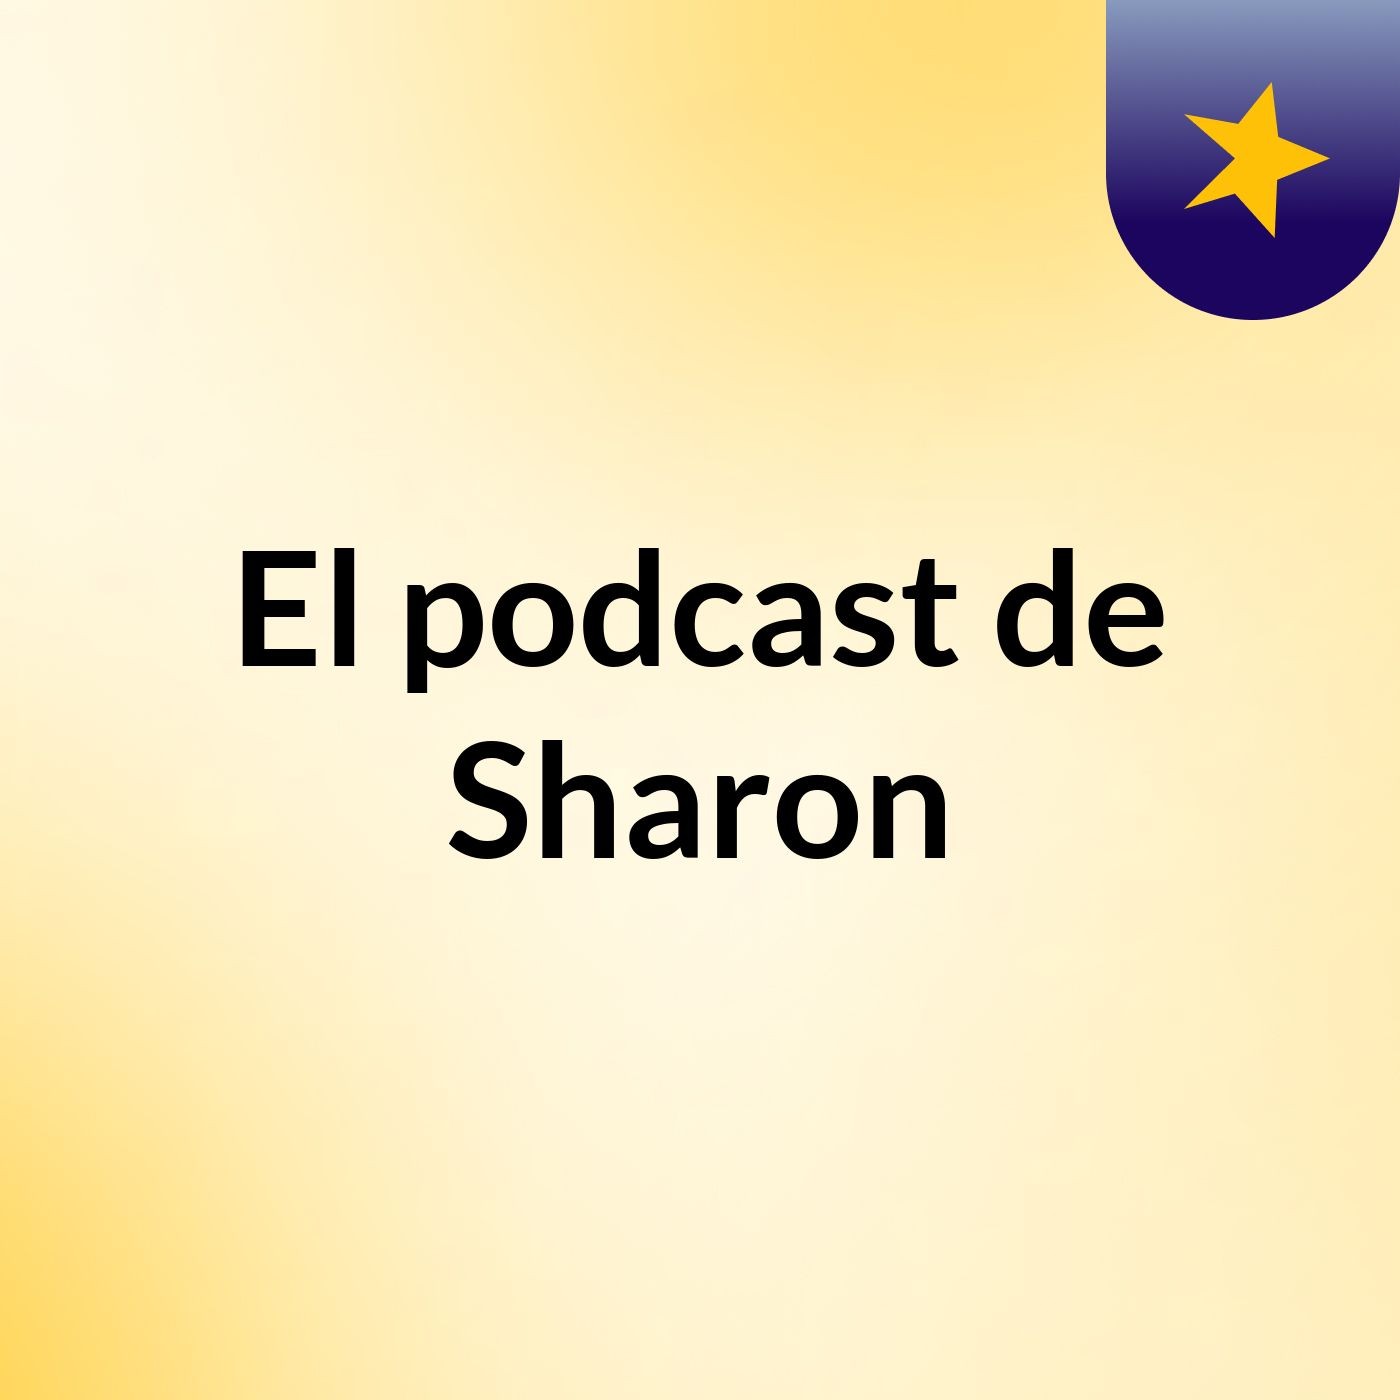 El podcast de Sharon